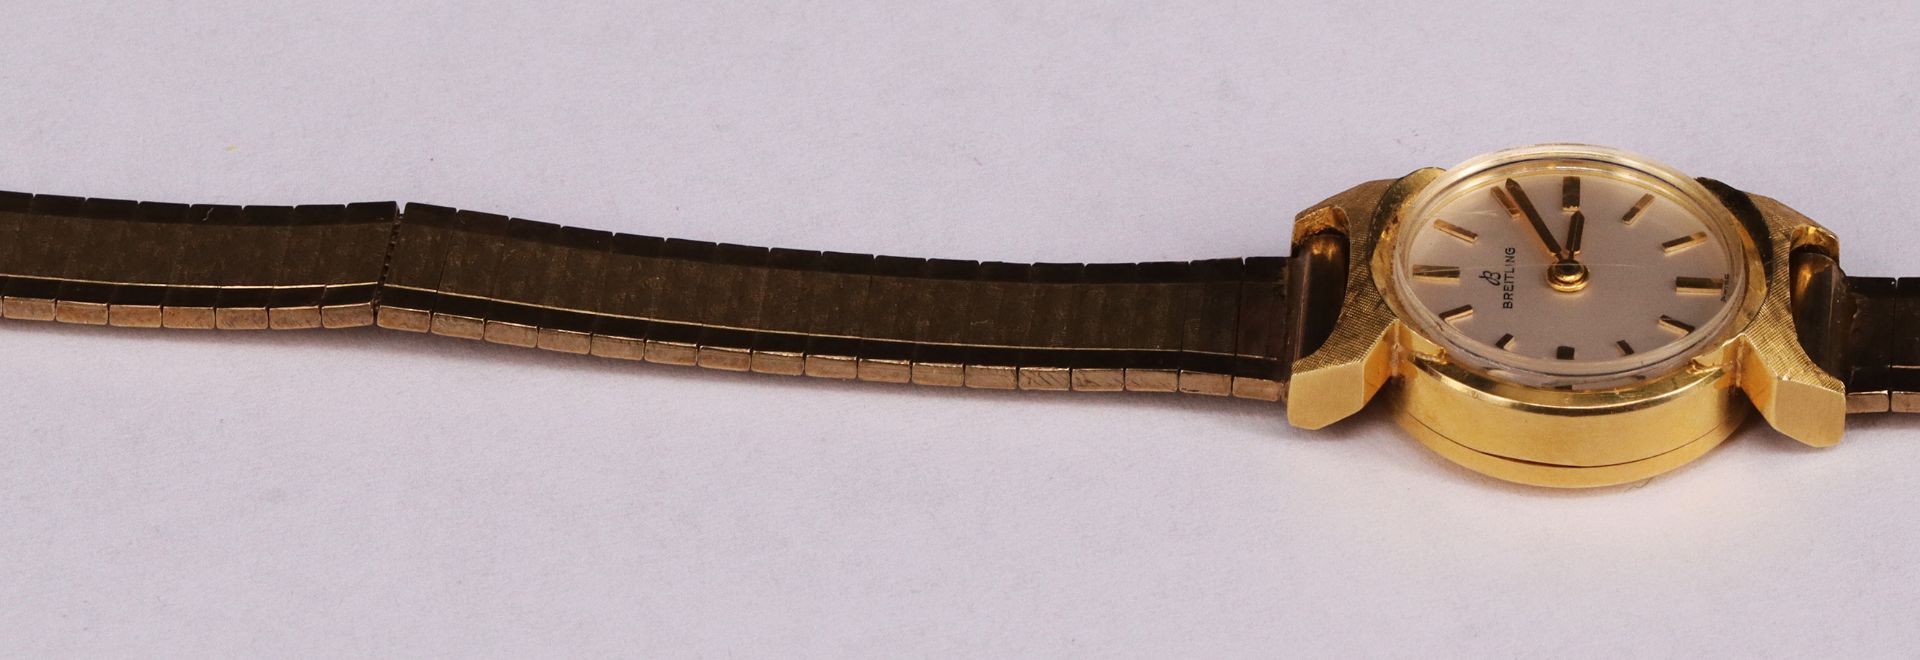 Breitling DAU, 750er GG, Band 333er GG, Uhr läuft an, Werk nicht geprüft, L. 18,5 cm, ges. 20,3 g; - Image 6 of 6